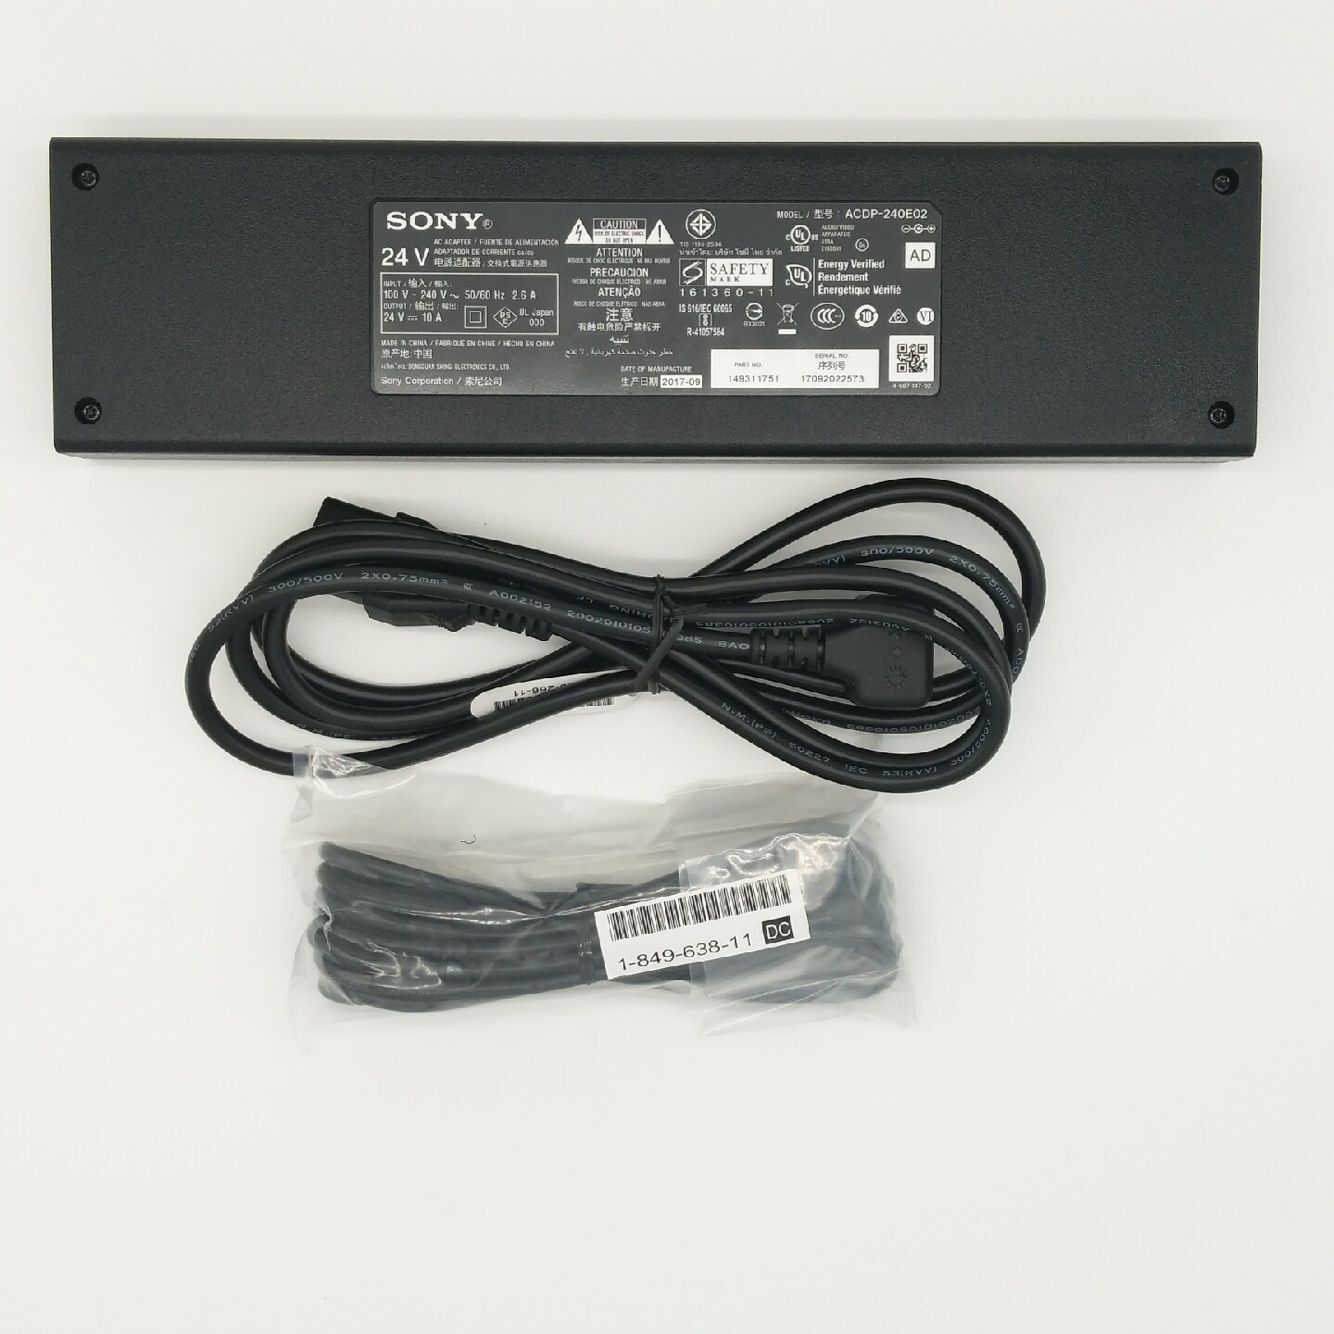 Original 240W Sony 1-493-117-61 Acdp-240e01 AC Adaptor